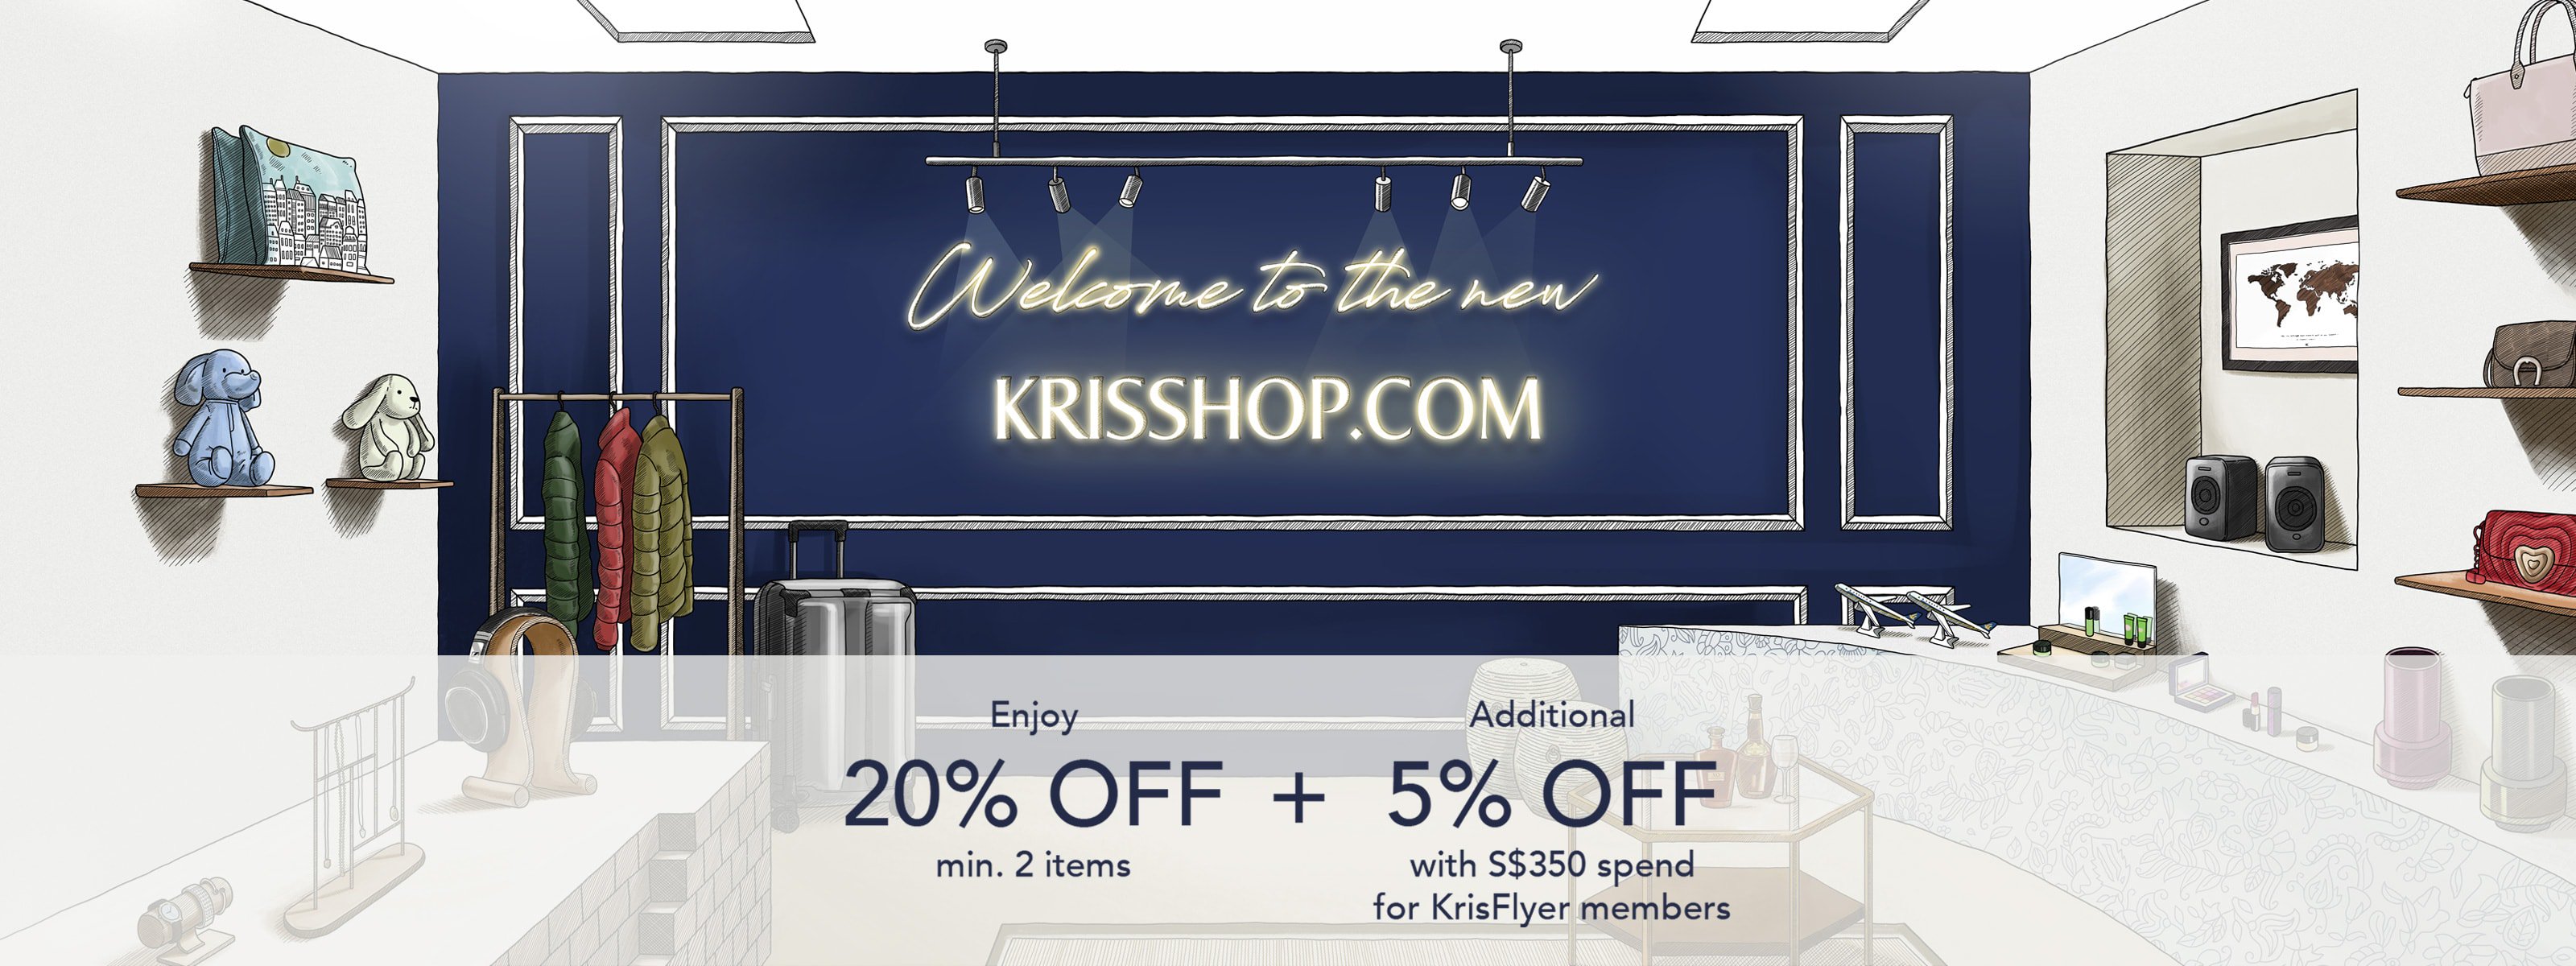 KrisShop Launch Promotion